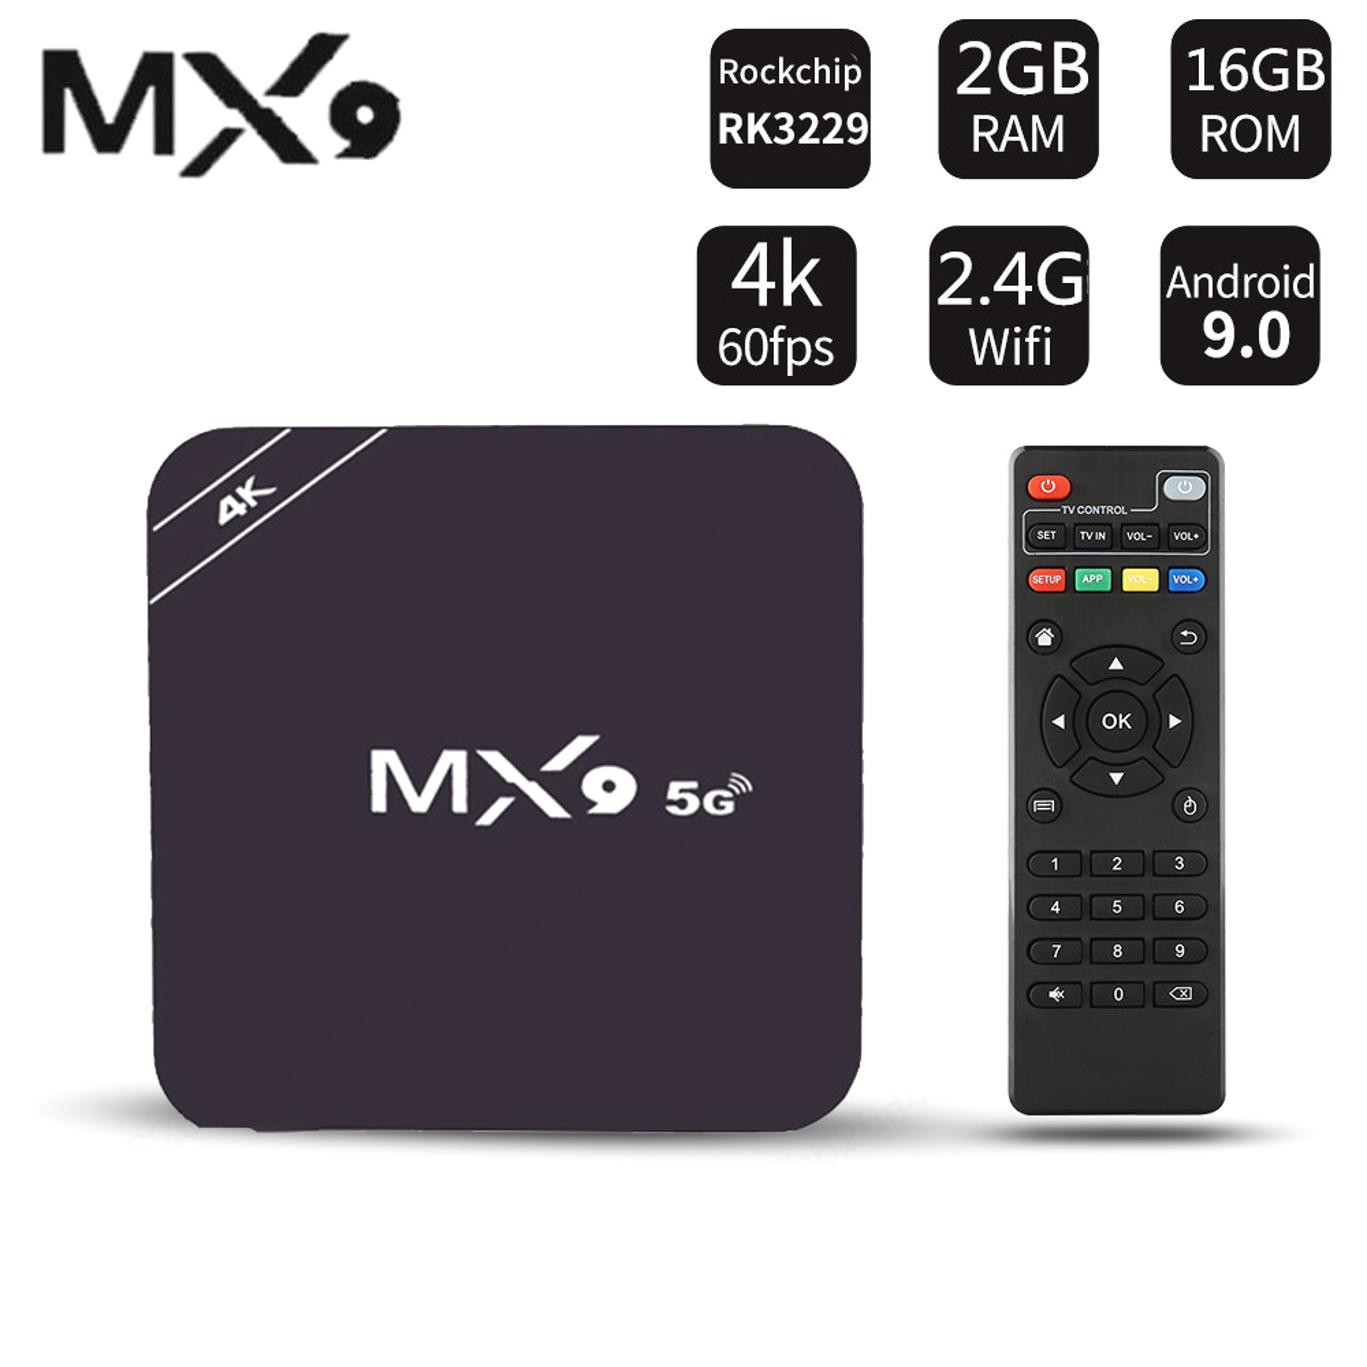 Đầu Tv Box Mx9, Android 4,4, 4k, Quad Core, 1gb Ram, 8gb Rom, 2,0 Hd, Hdmi, Sds, Slot, Wi-Fi 2.4ghz